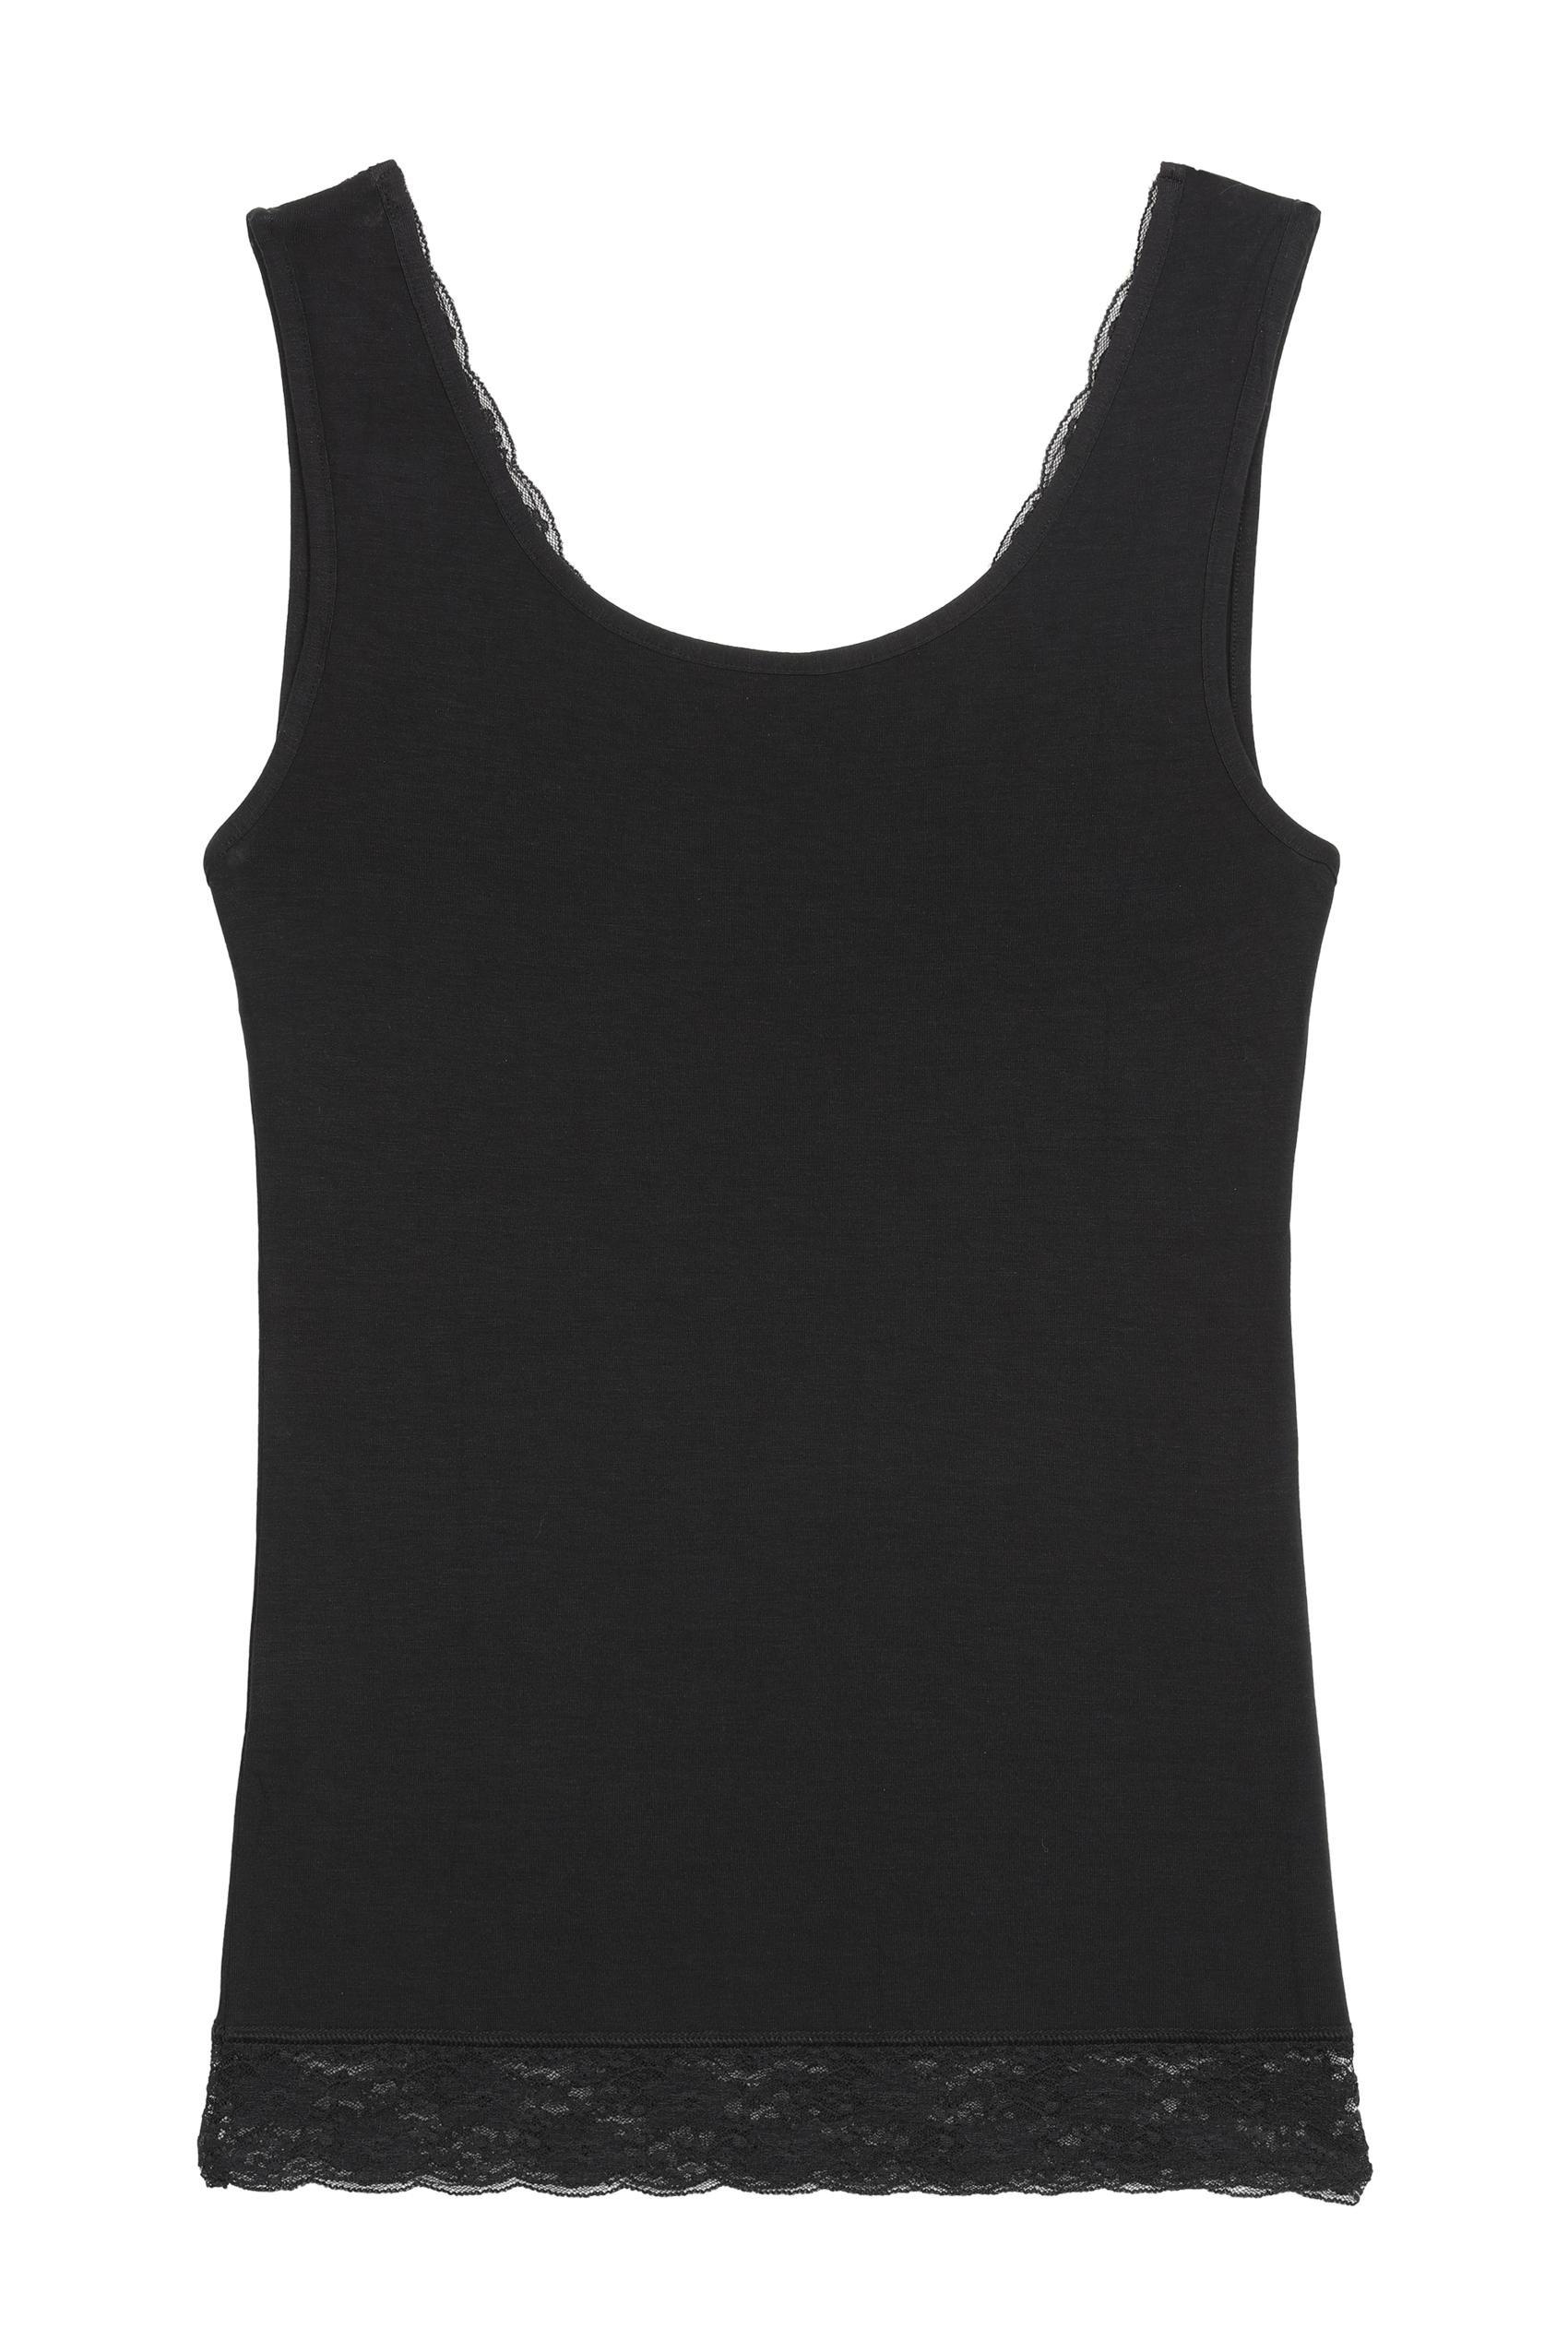 Tezenis - Black Reversible V-Neck Lace Vest Top